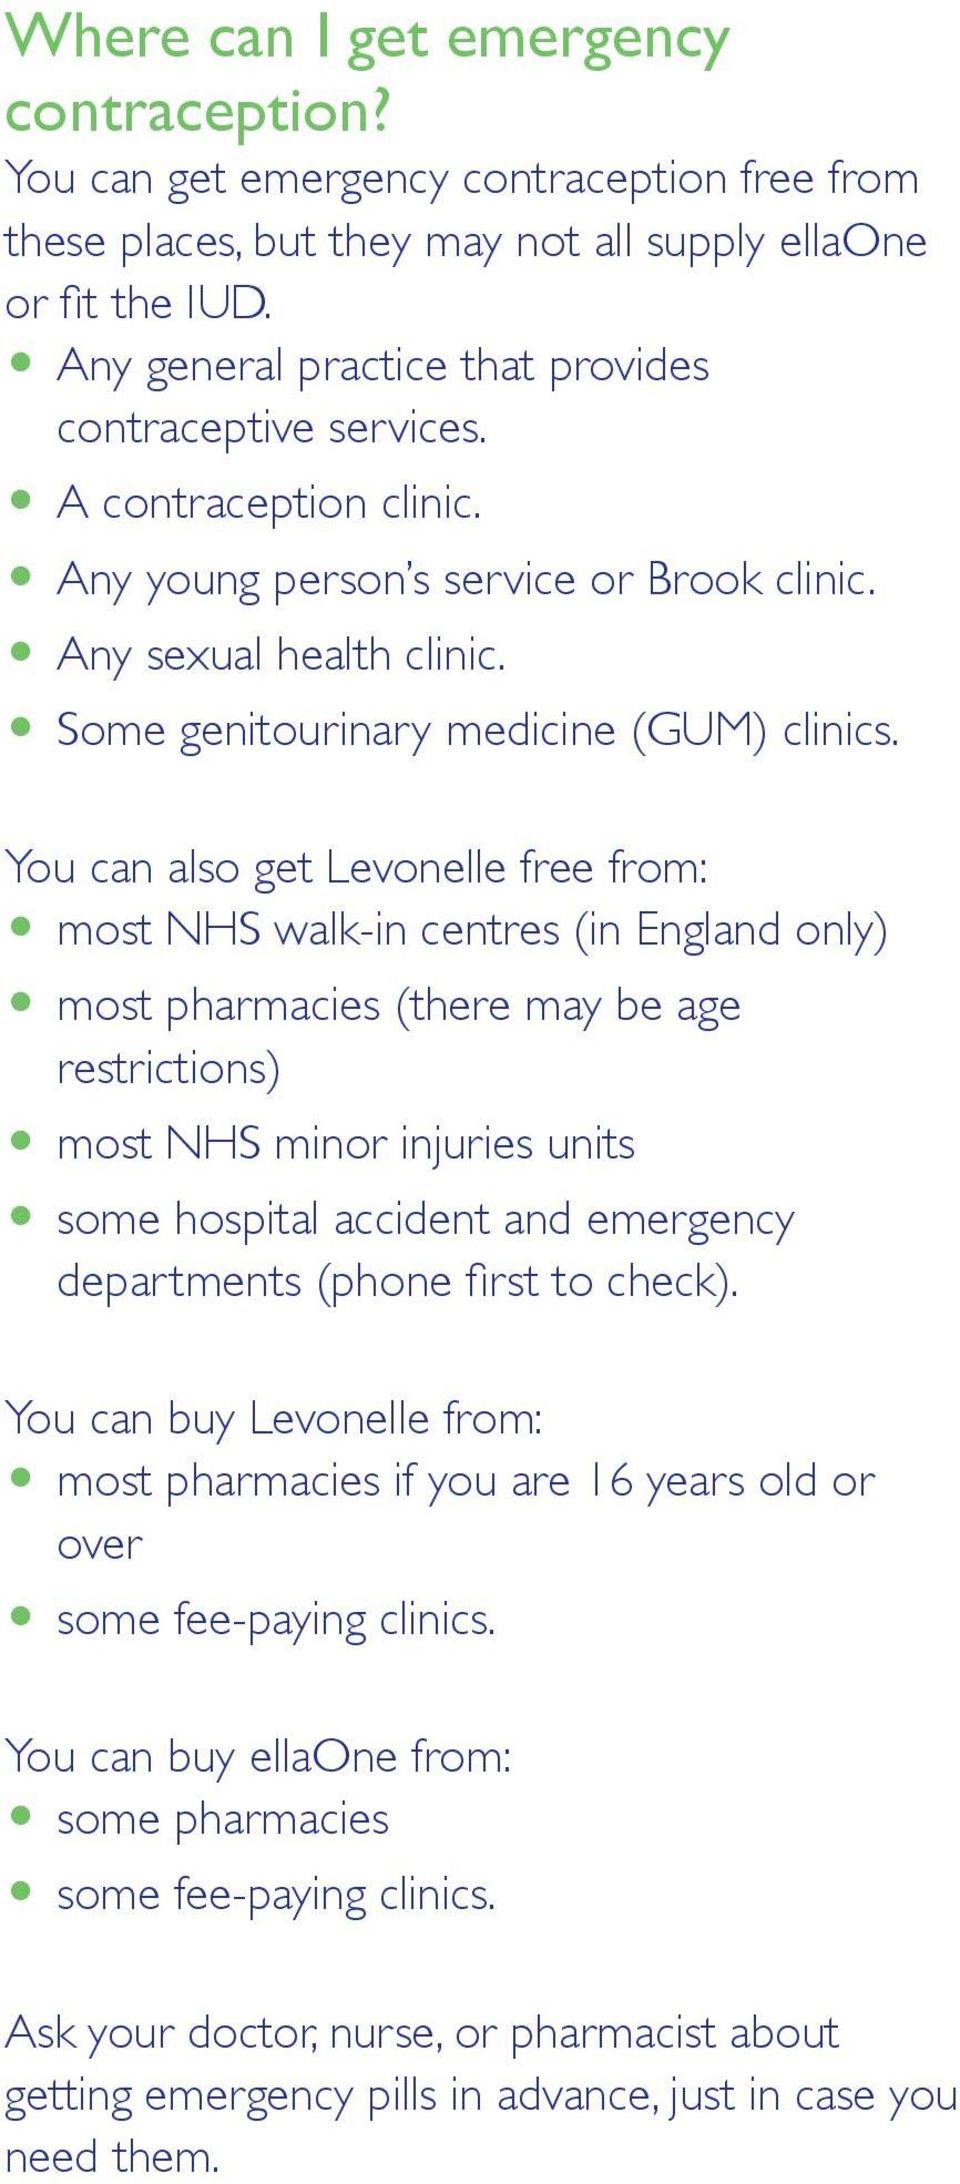 O Some genitourinary medicine (GUM) clinics.